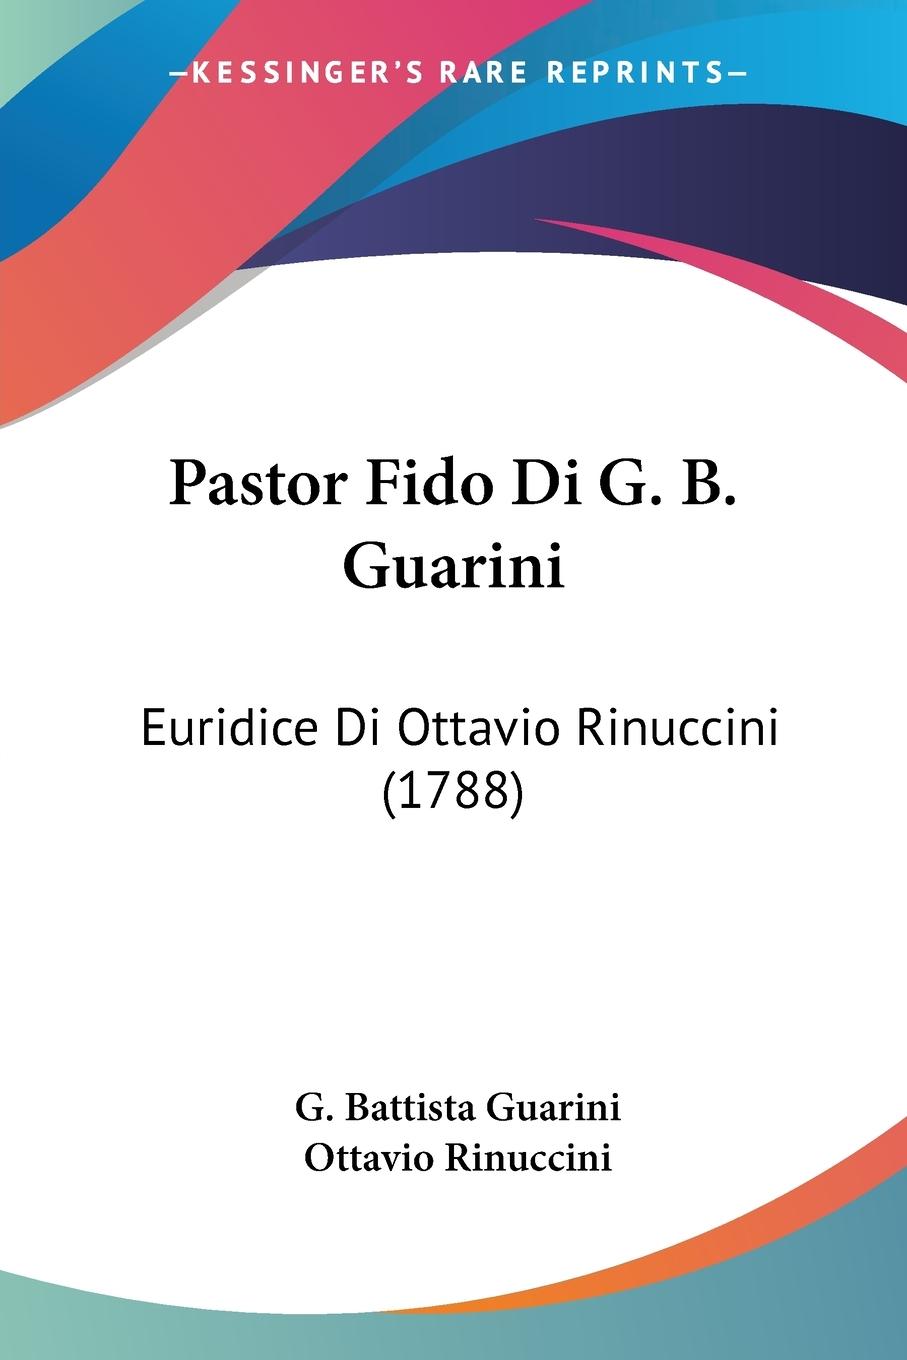 Pastor Fido Di G. B. Guarini - Guarini, G. Battista Rinuccini, Ottavio